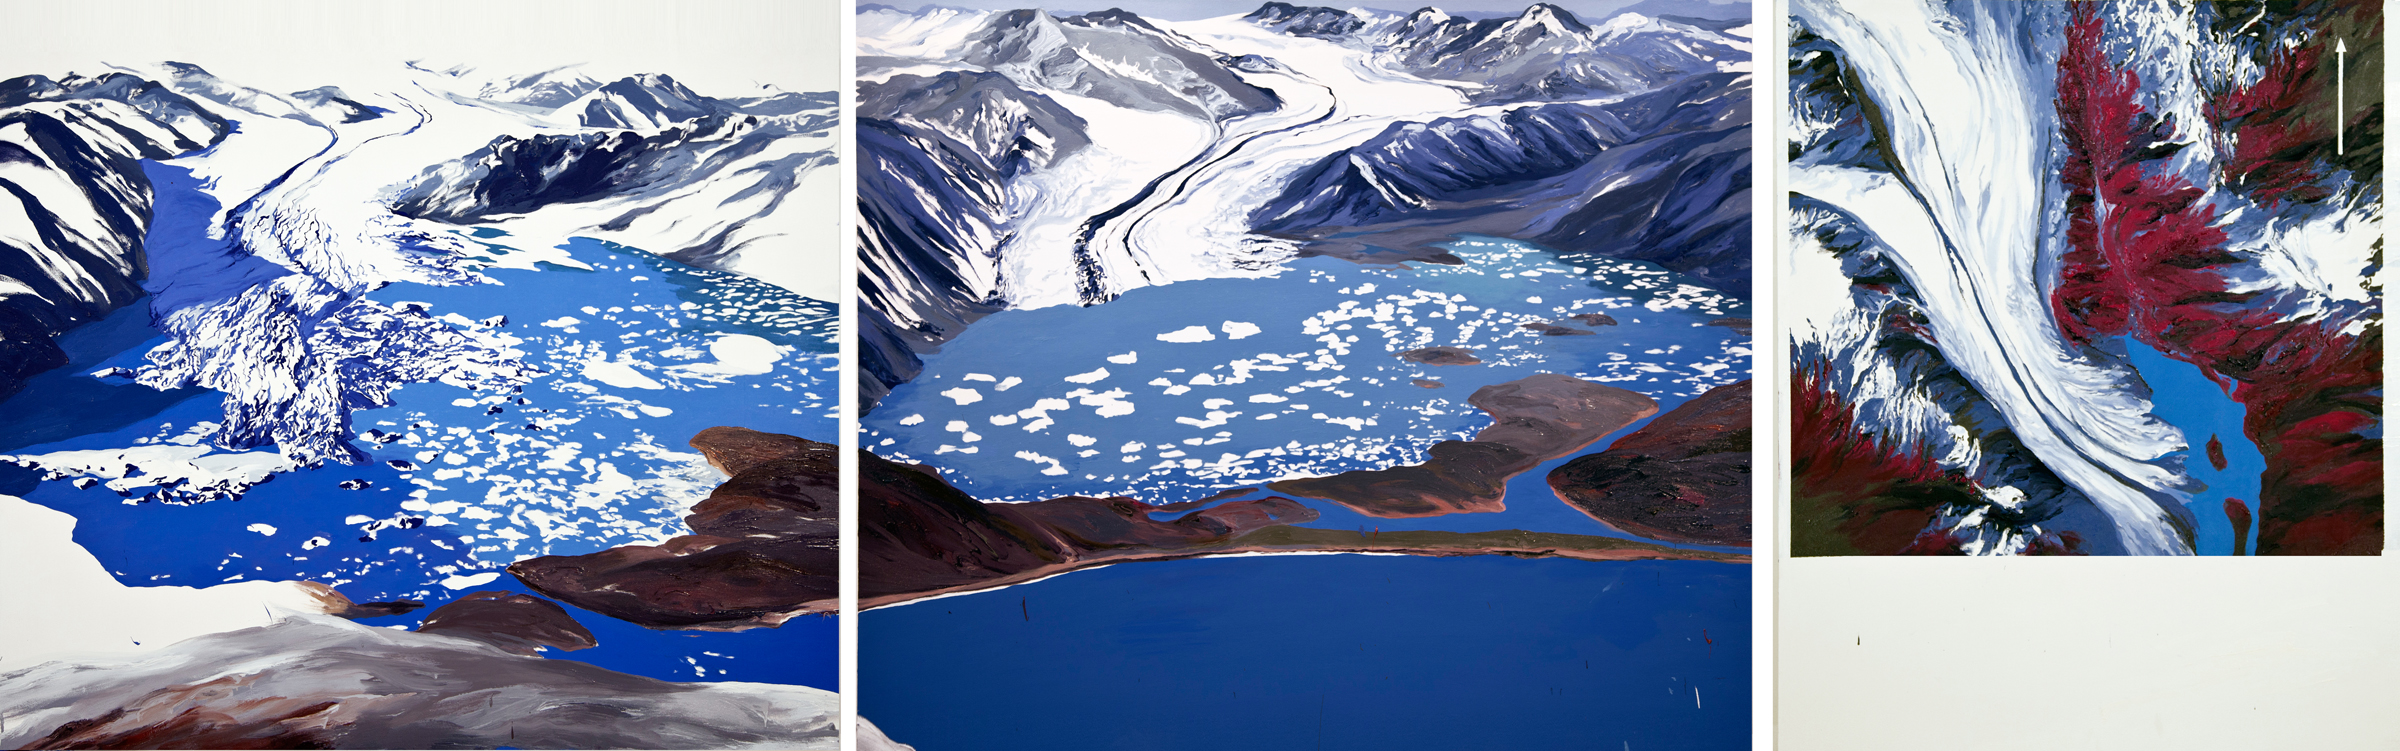 Bear Glacier 2002, 2007, 1984